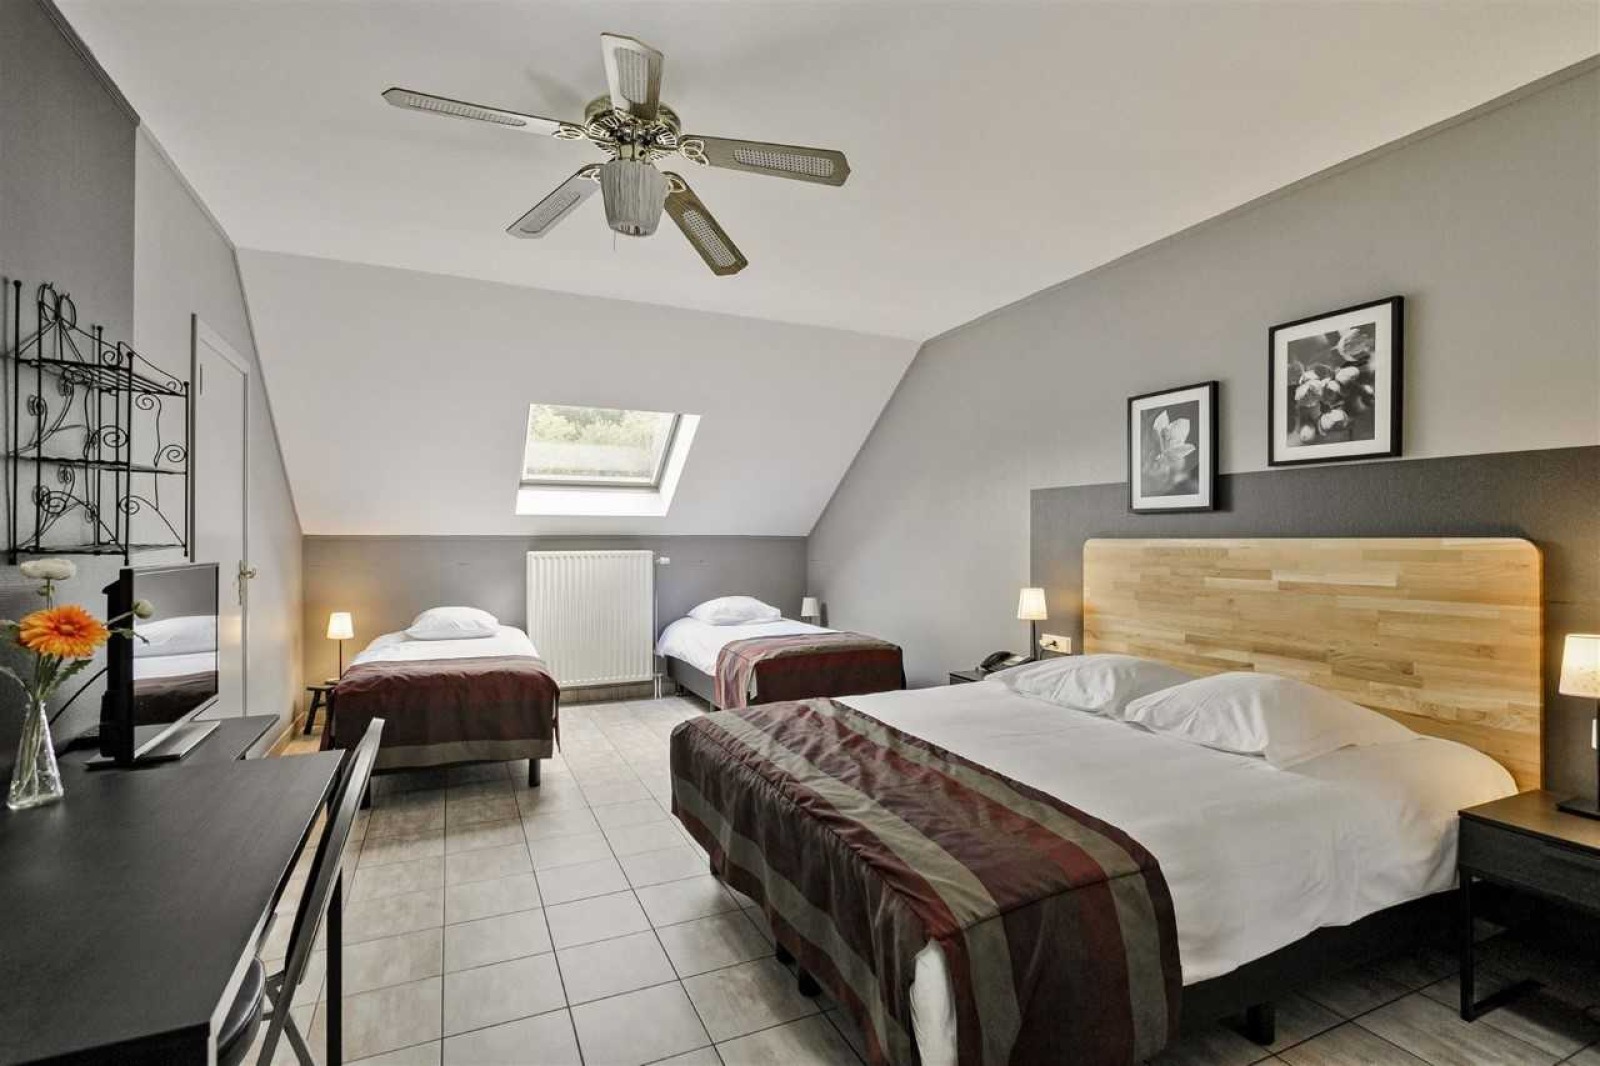 Chambre mansardée composé d'un lit double et de deux lits simples, télévision et ventilateur au plafond